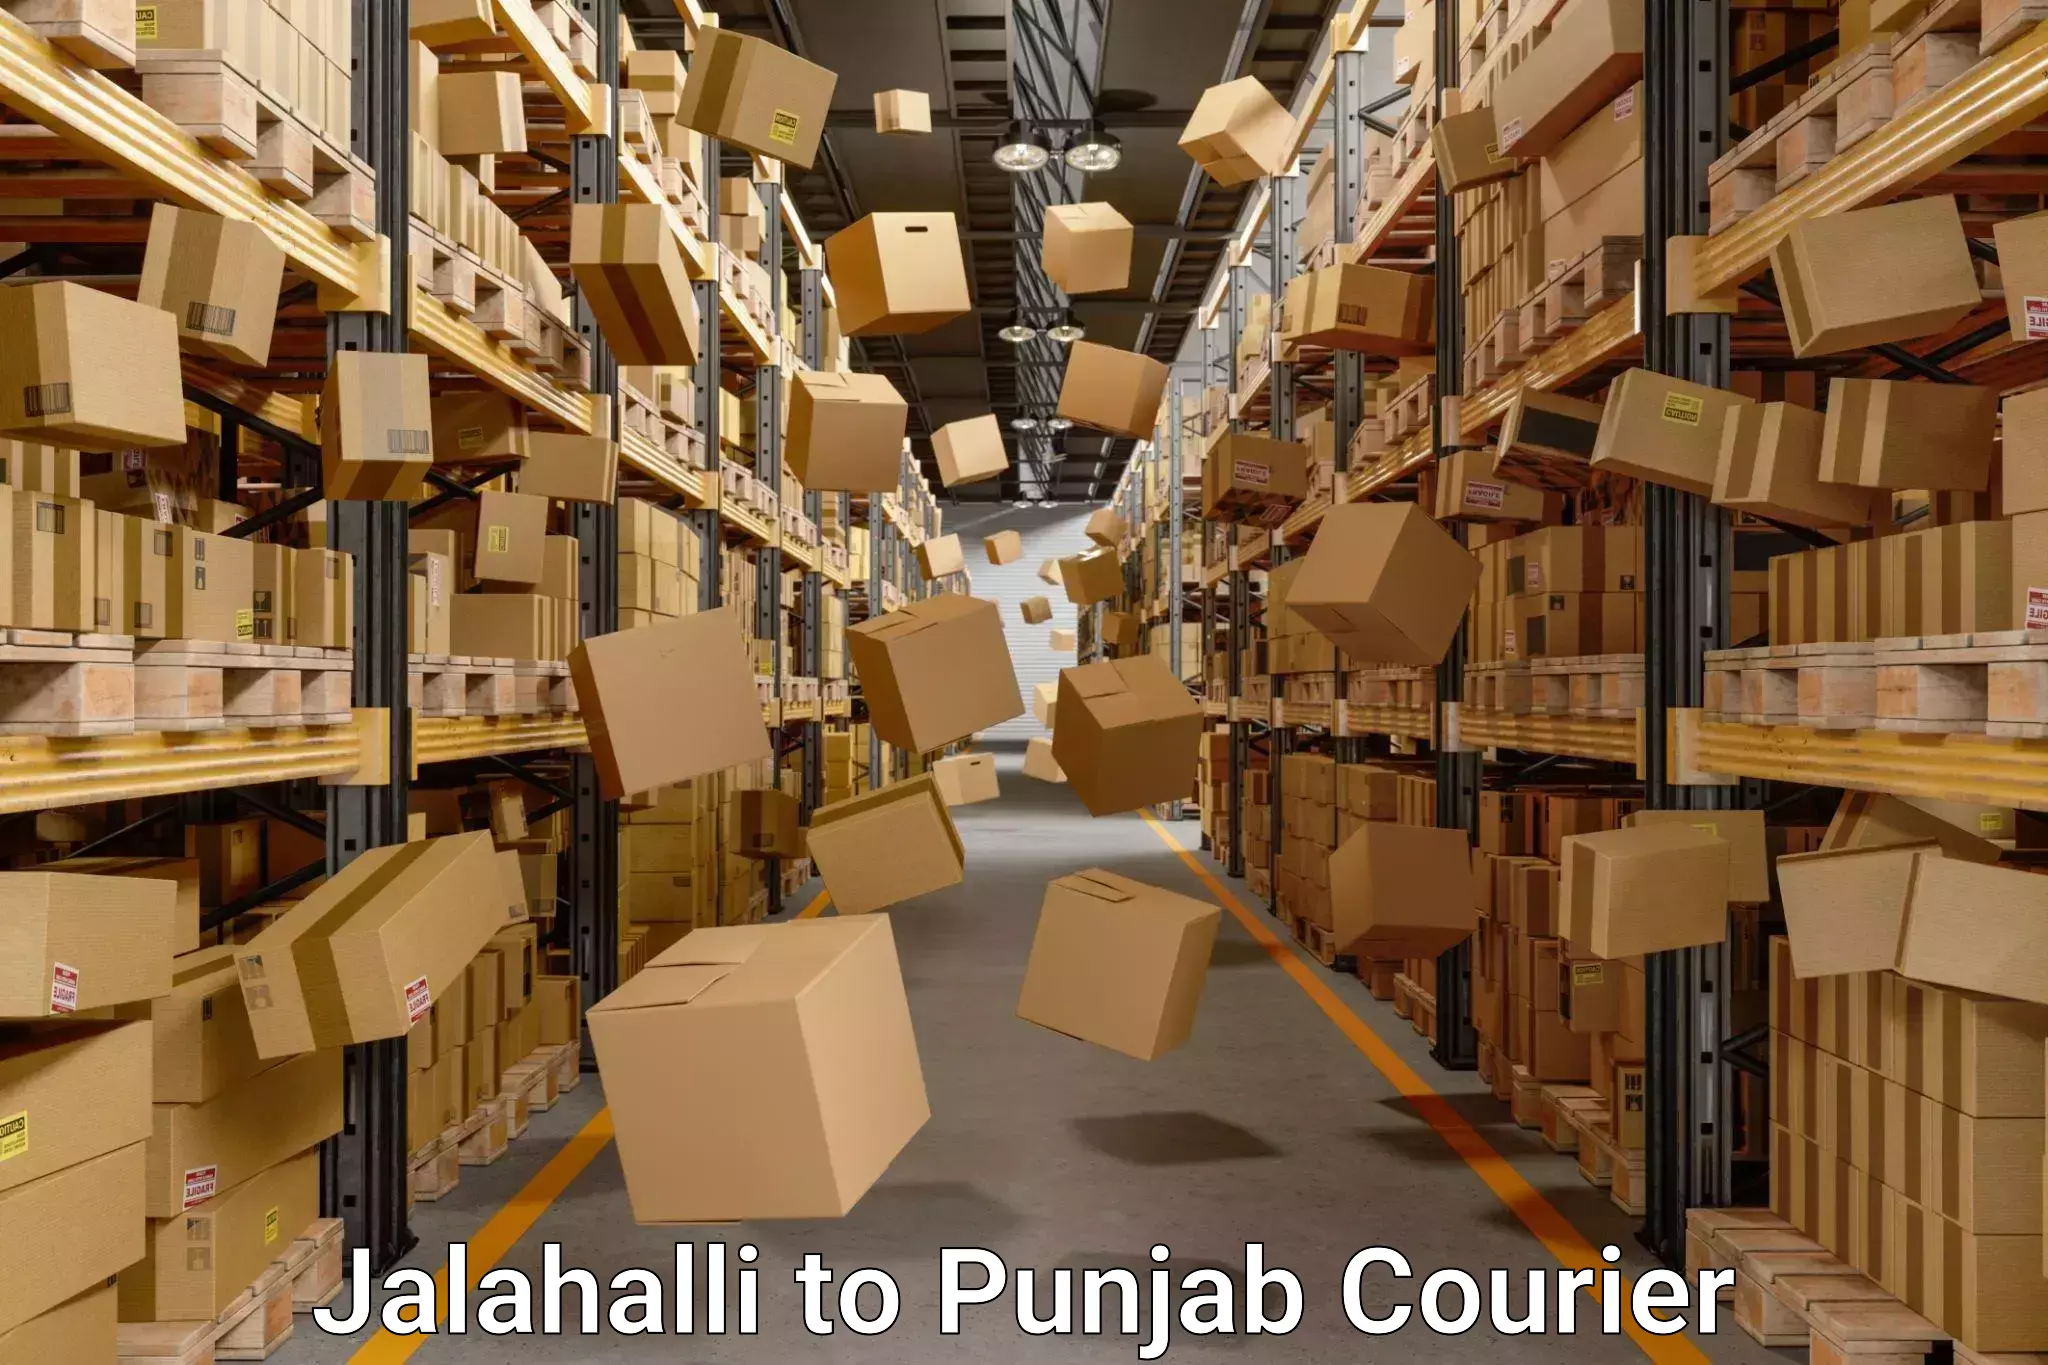 Furniture transport experts Jalahalli to Punjab